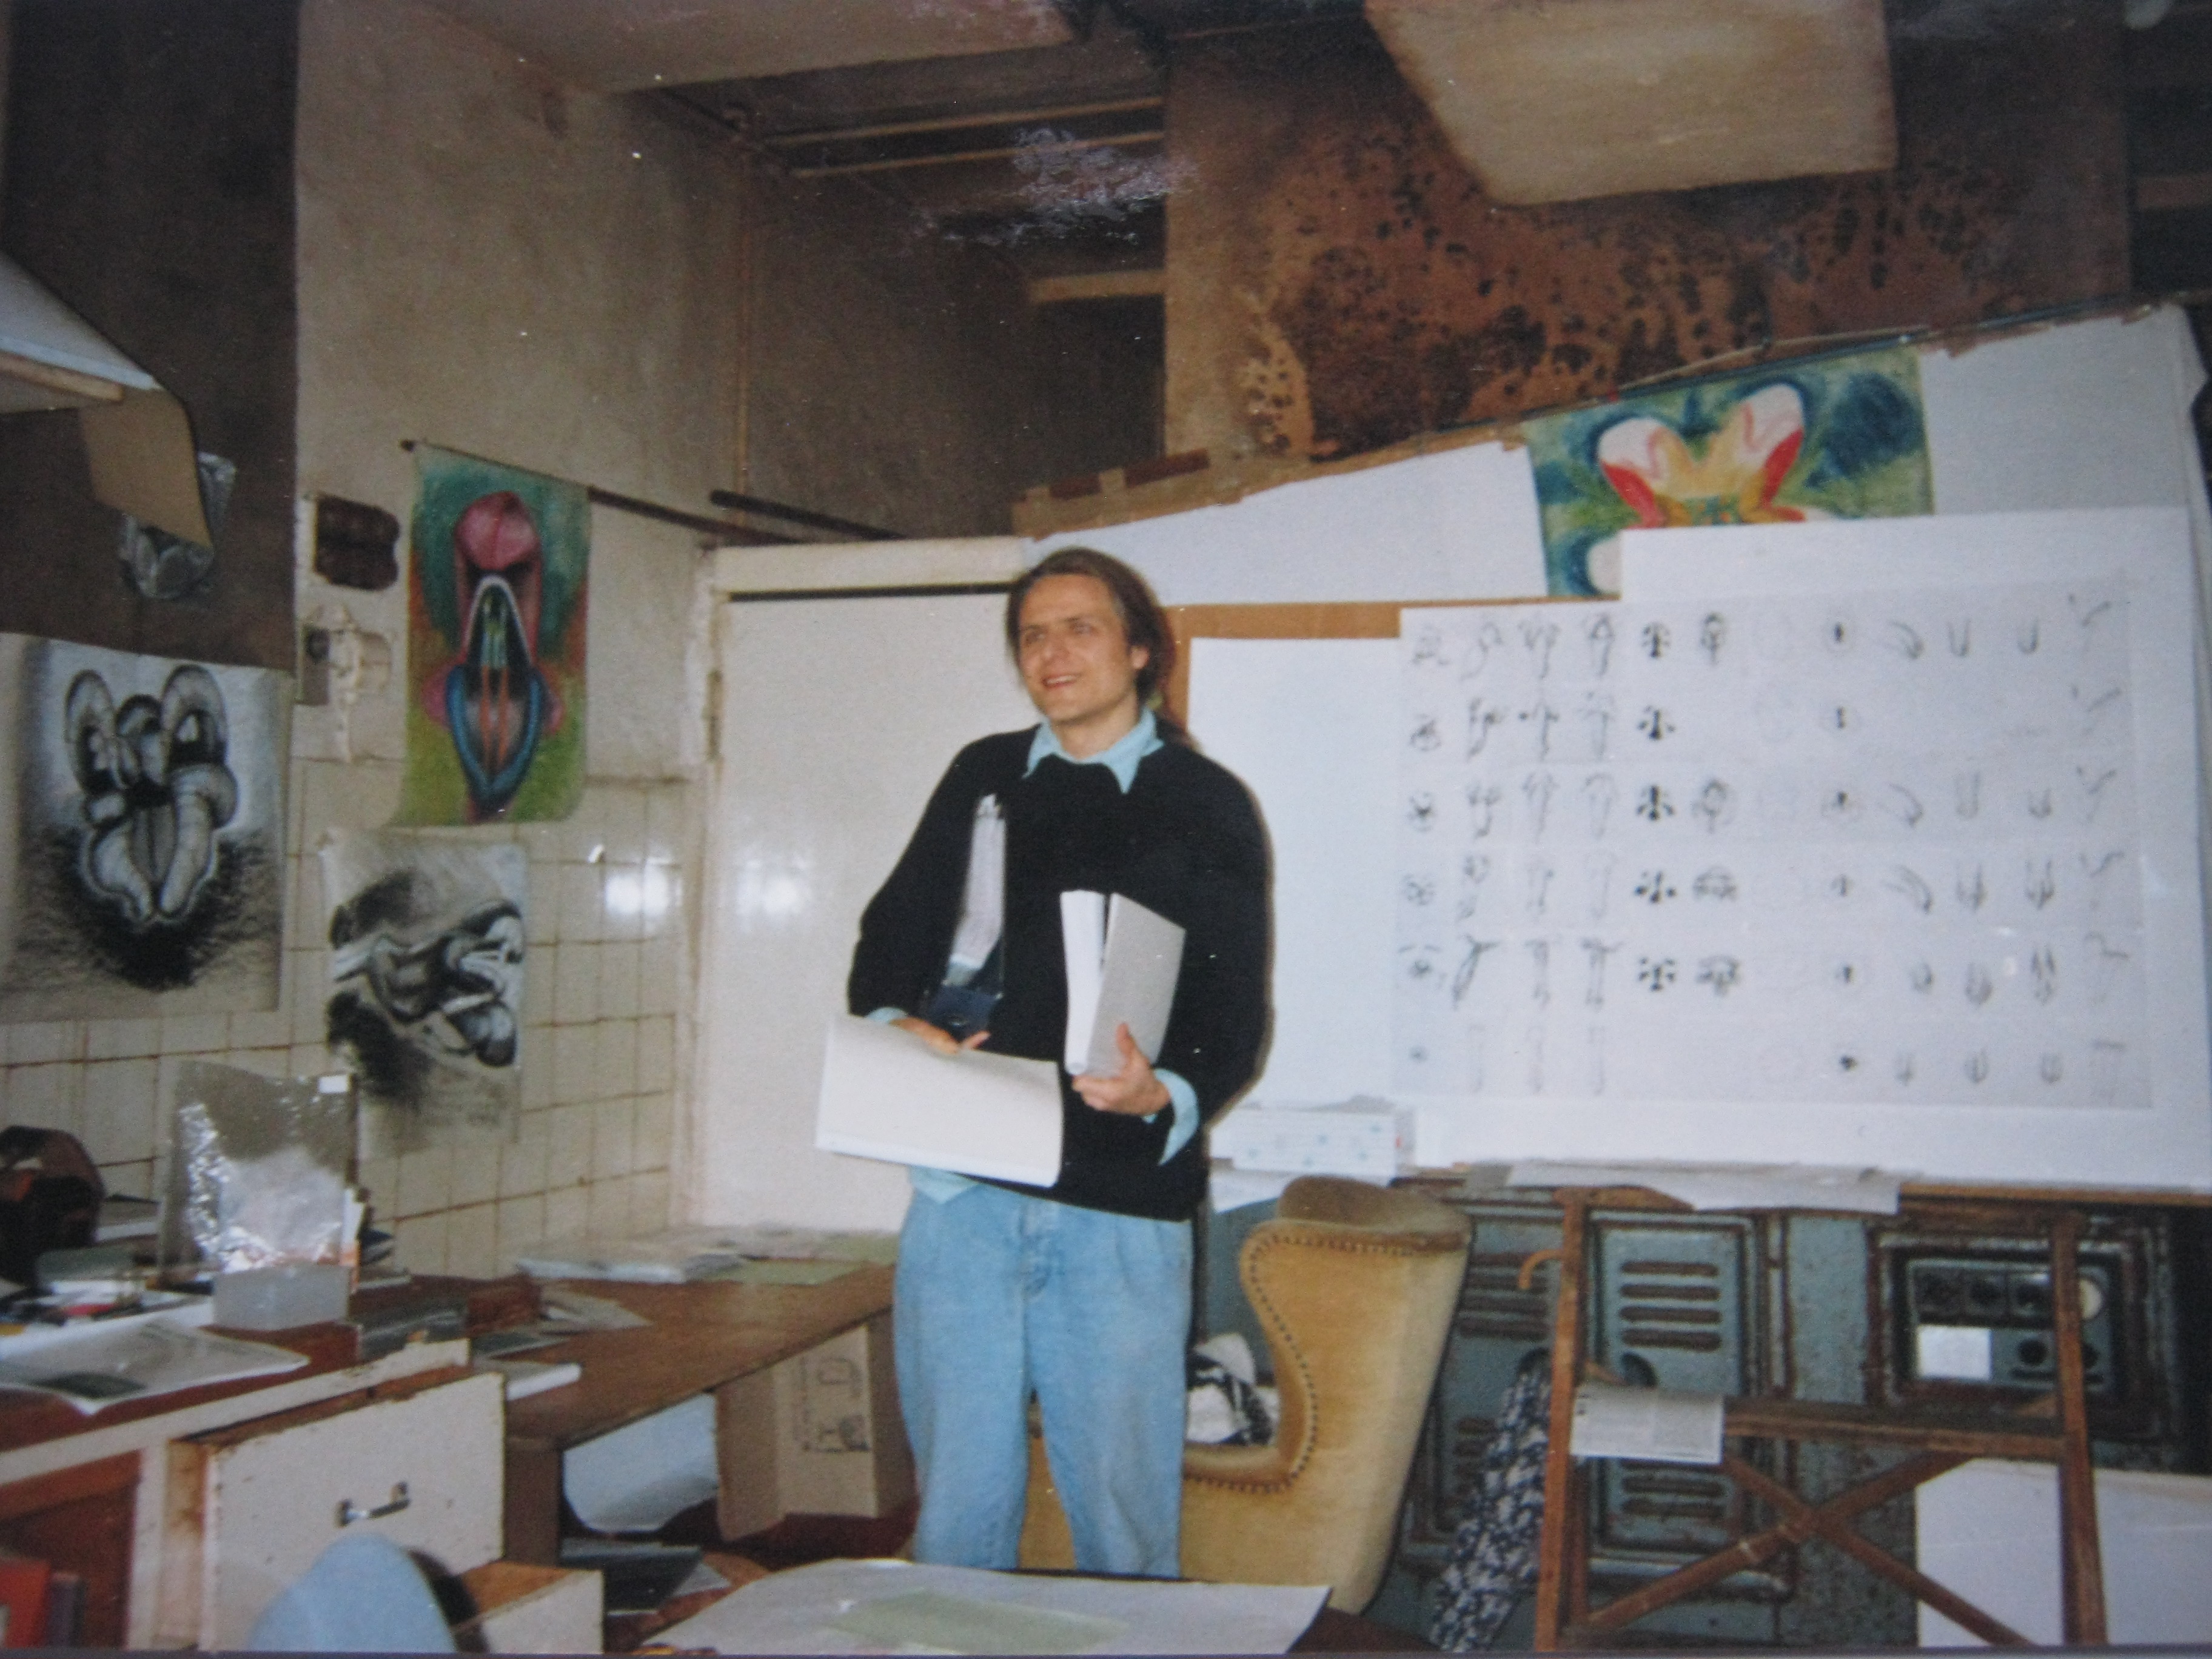 antirrhinum-diplomarbeit-in-backstube-dirkmarkus-lichtenberger-1992